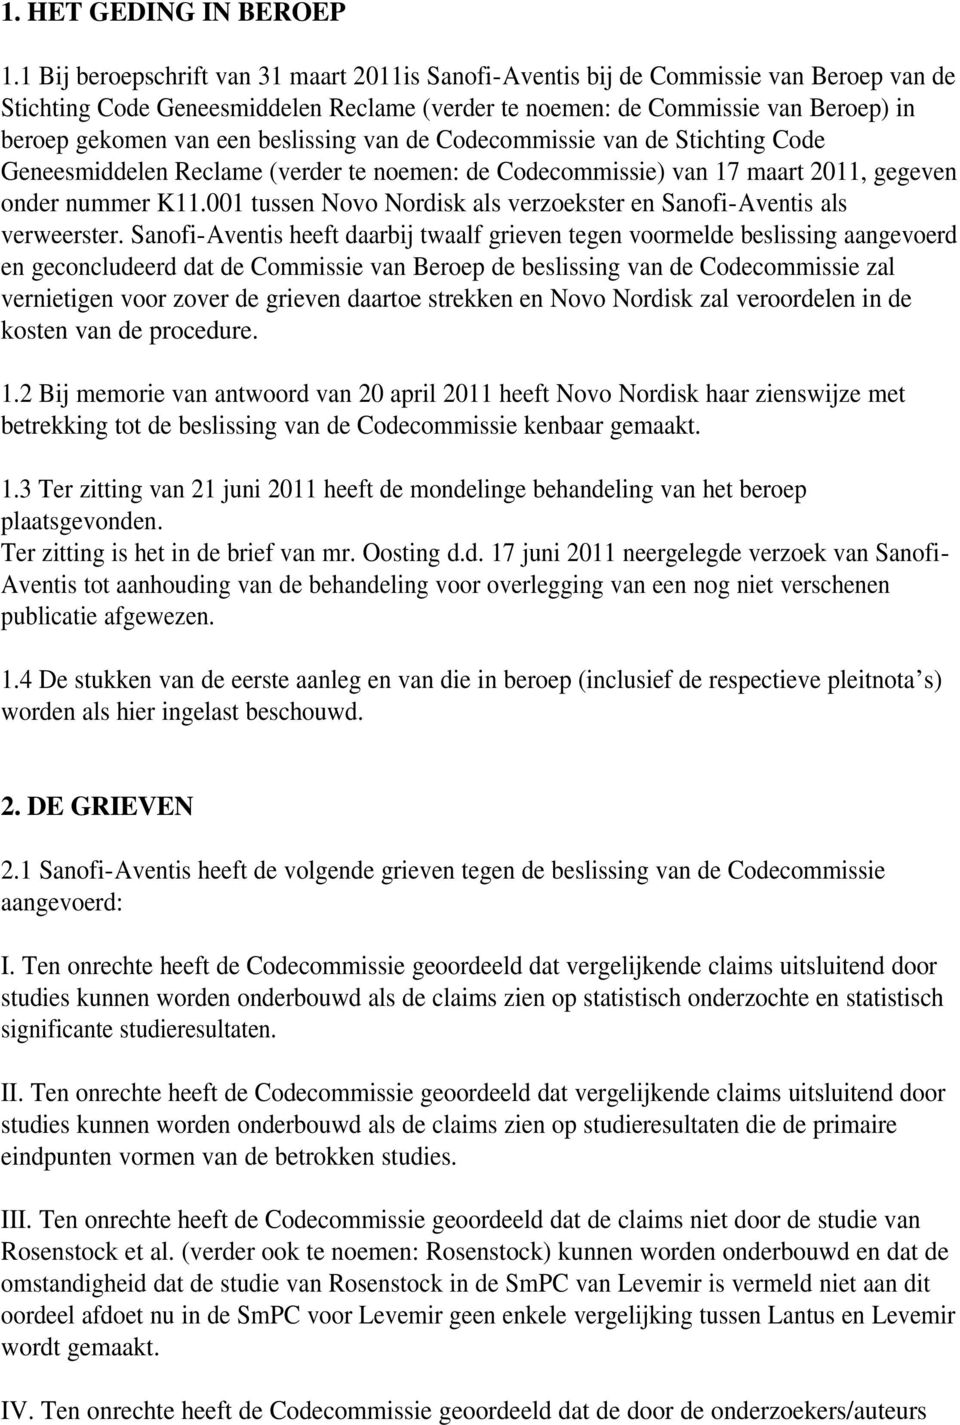 beslissing van de Codecommissie van de Stichting Code Geneesmiddelen Reclame (verder te noemen: de Codecommissie) van 17 maart 2011, gegeven onder nummer K11.